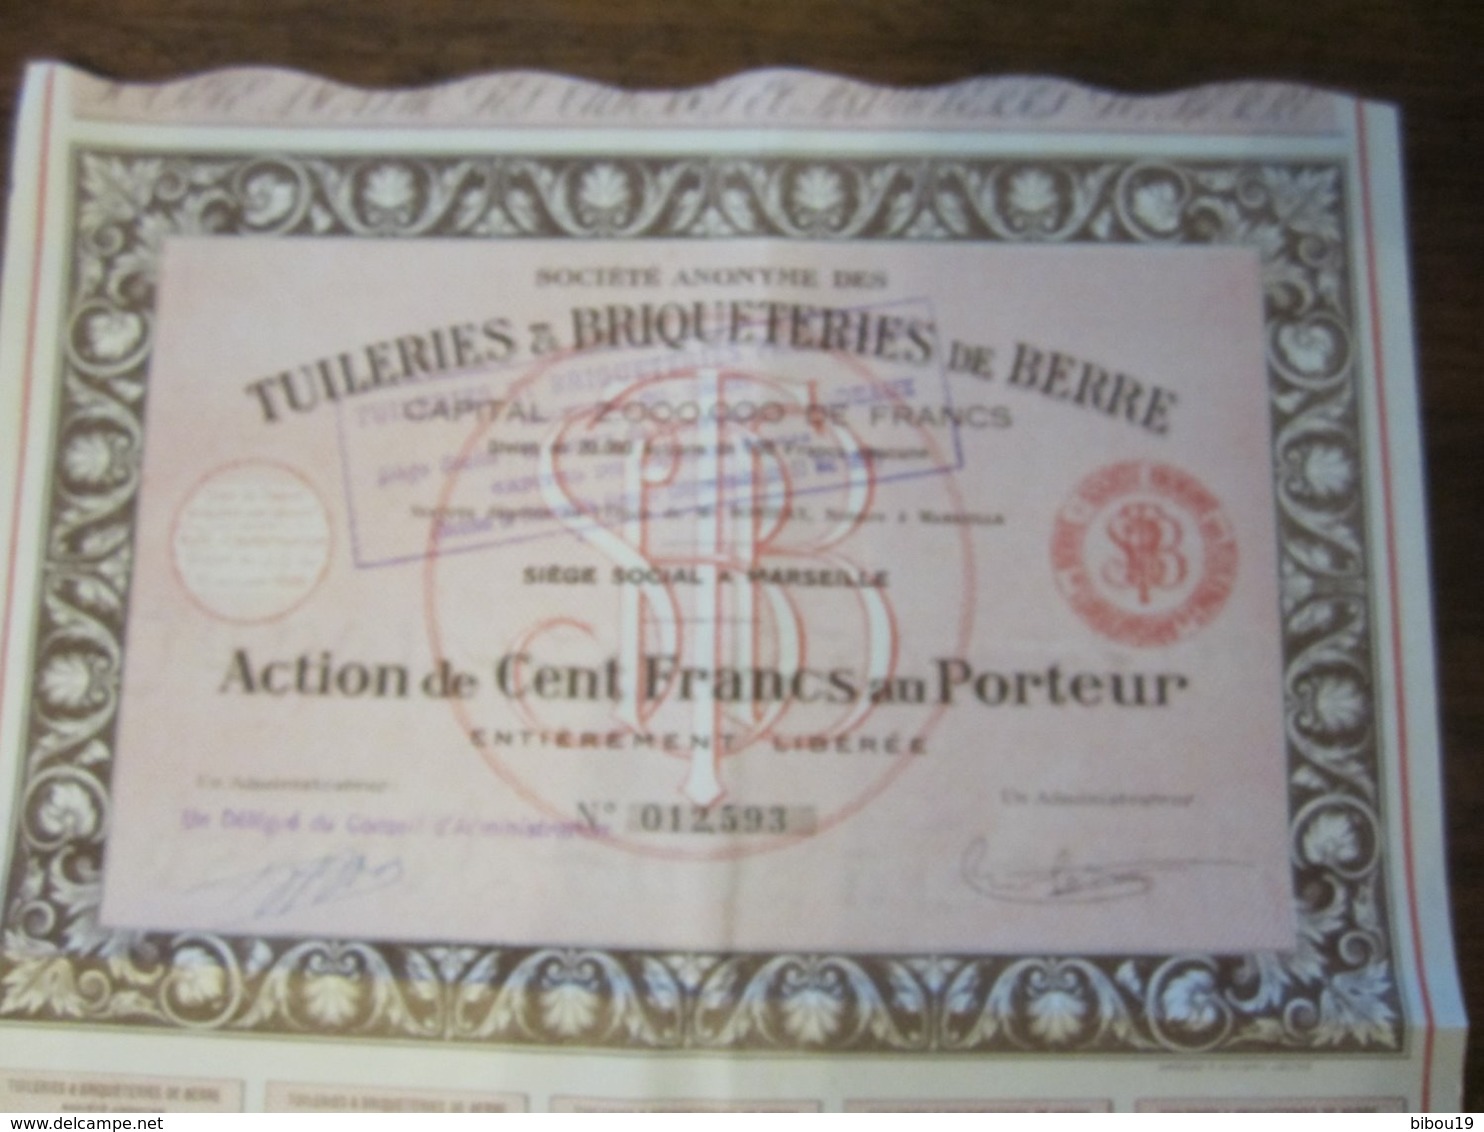 SOCIETE ANONYME DES TUILERIES ET BRIQUETERIES DE BERRE ACTION DE 100 FRANCS AU PORTEUR 1928 - S - V